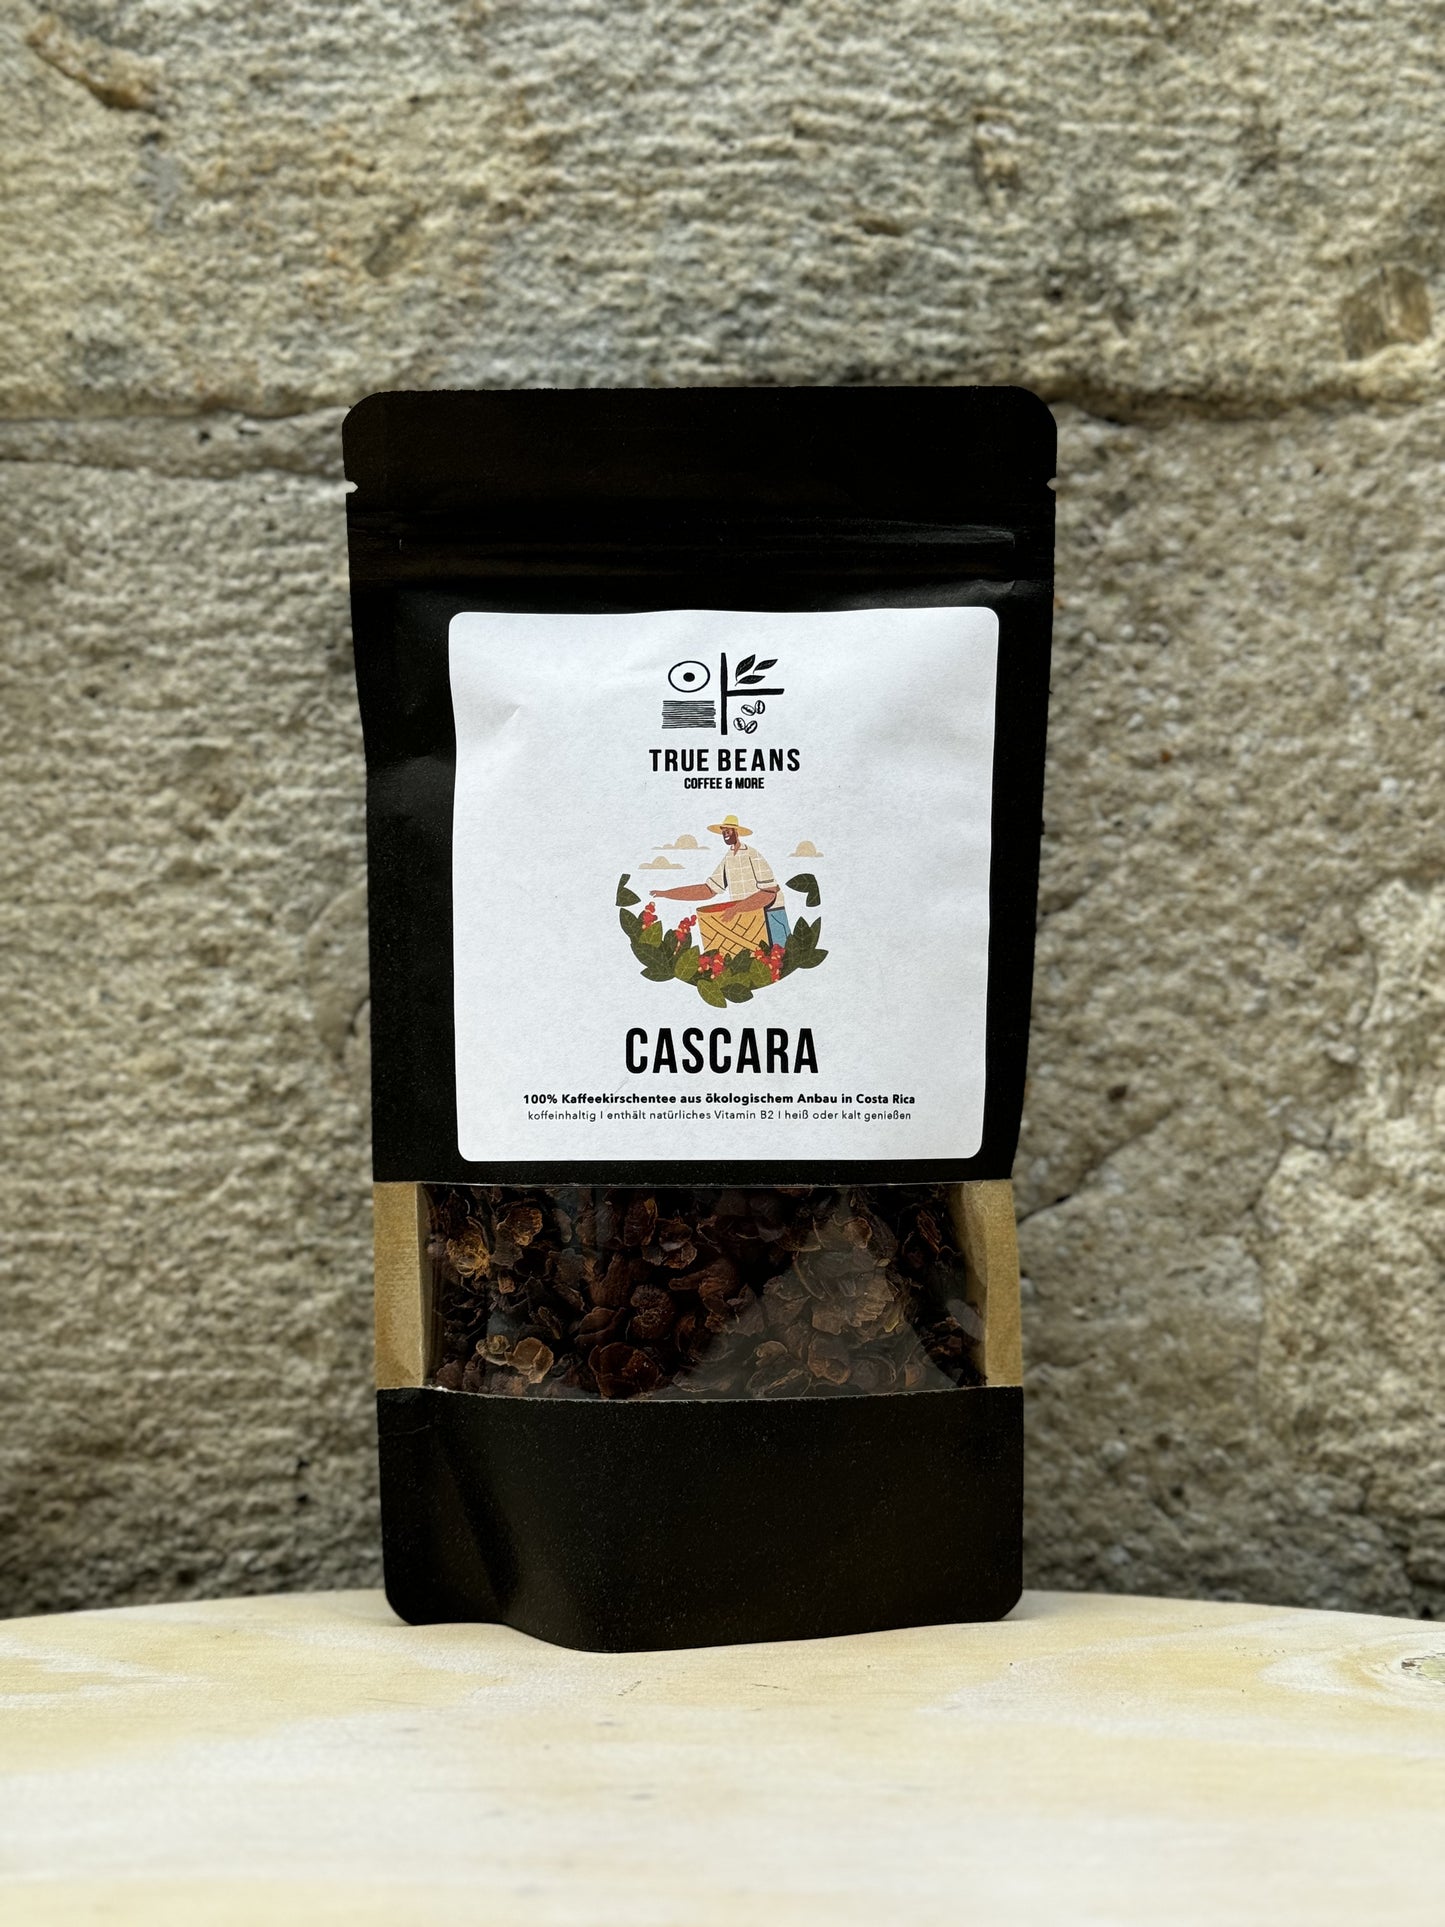 Produktbild von True Beans Cascara Kaffeekirschentee, 100% aus ökologischem Anbau in Costa Rica, verpackt in einer schwarzen Tüte mit einem klaren Sichtfenster und einem weißen Etikett.